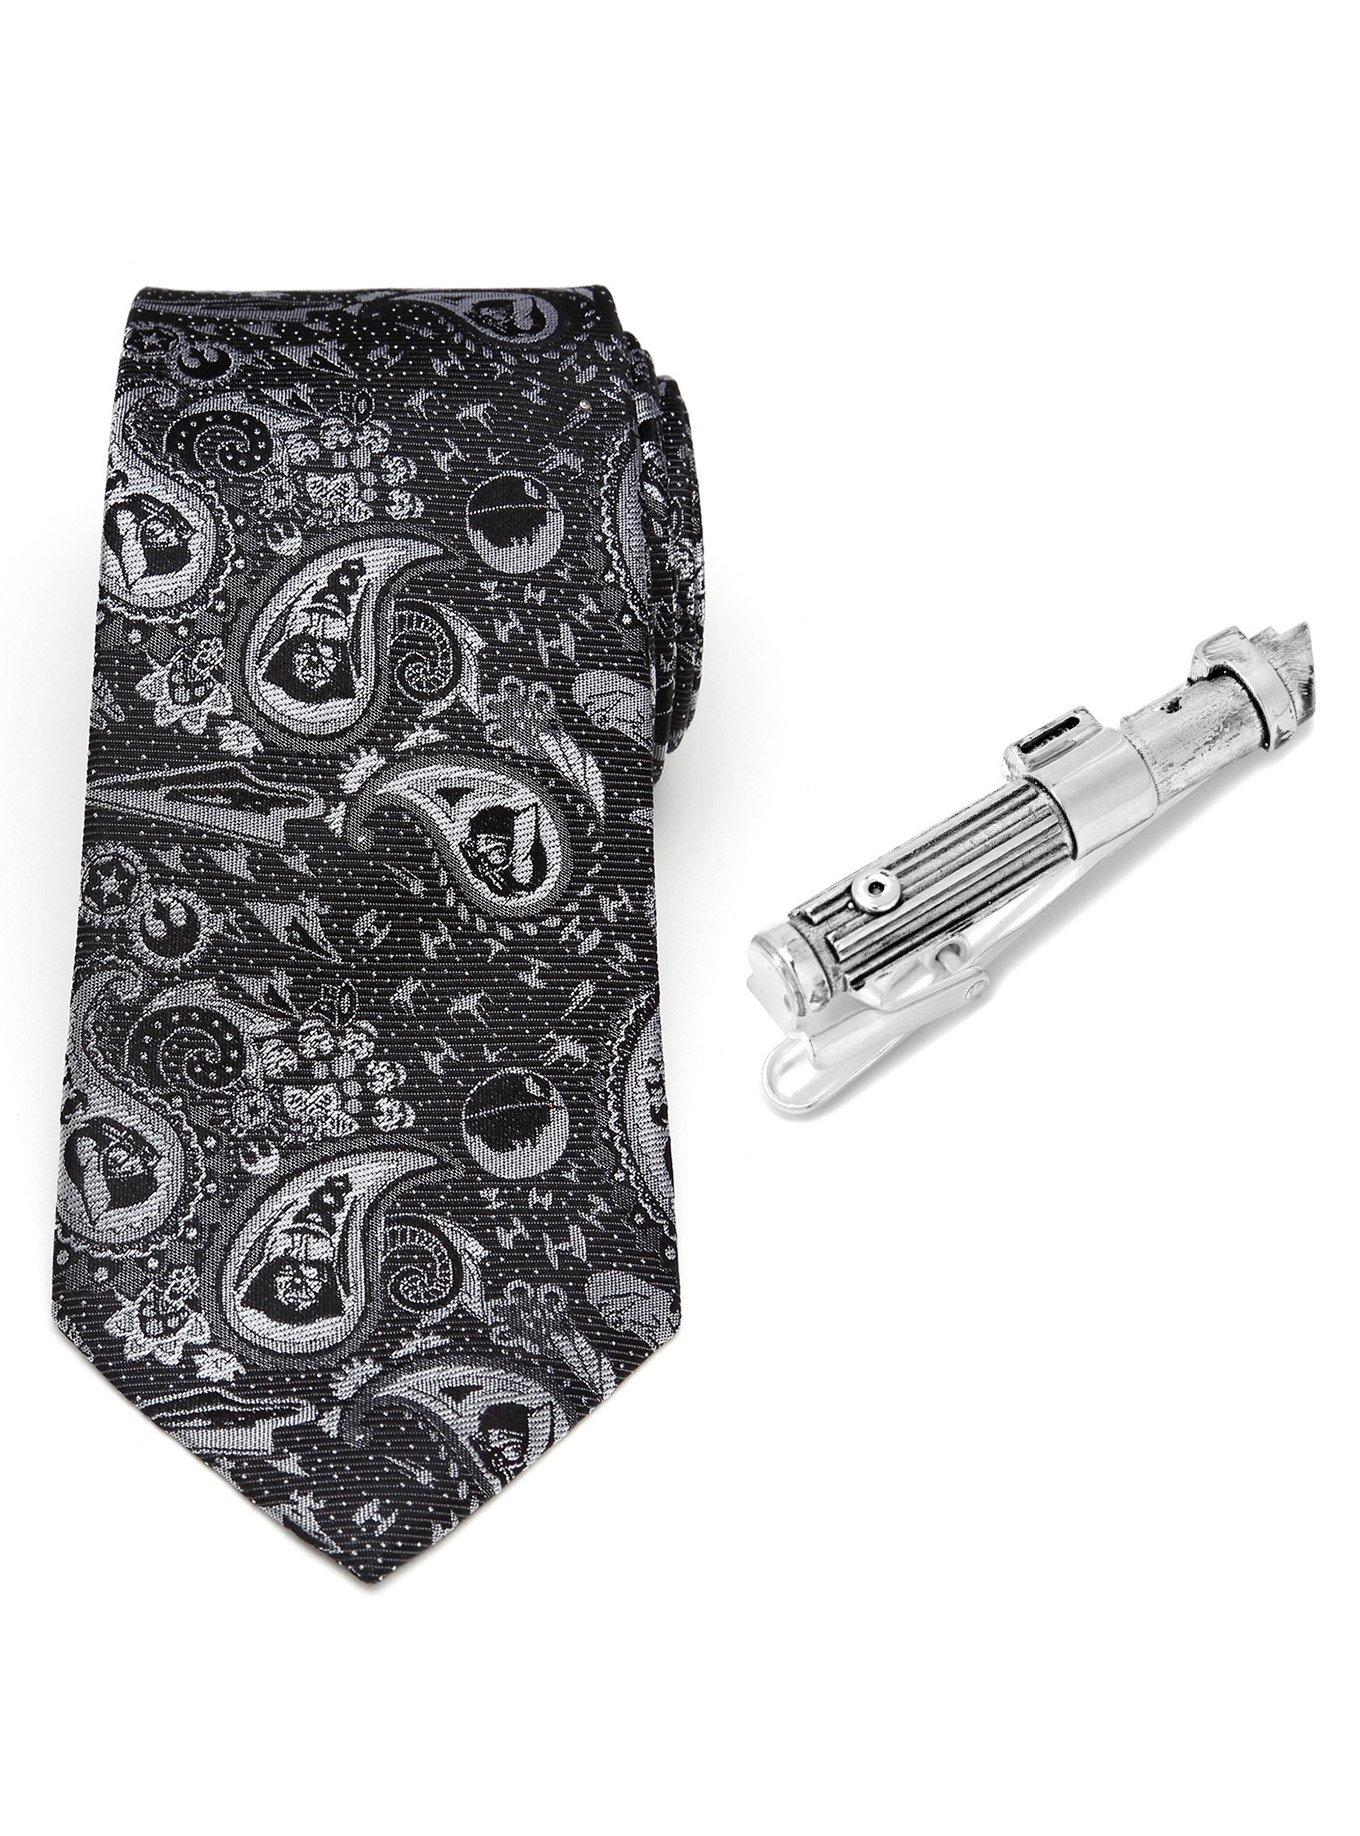 Star Wars Darth Vader Favorites Necktie and Tie Clip Set, , hi-res